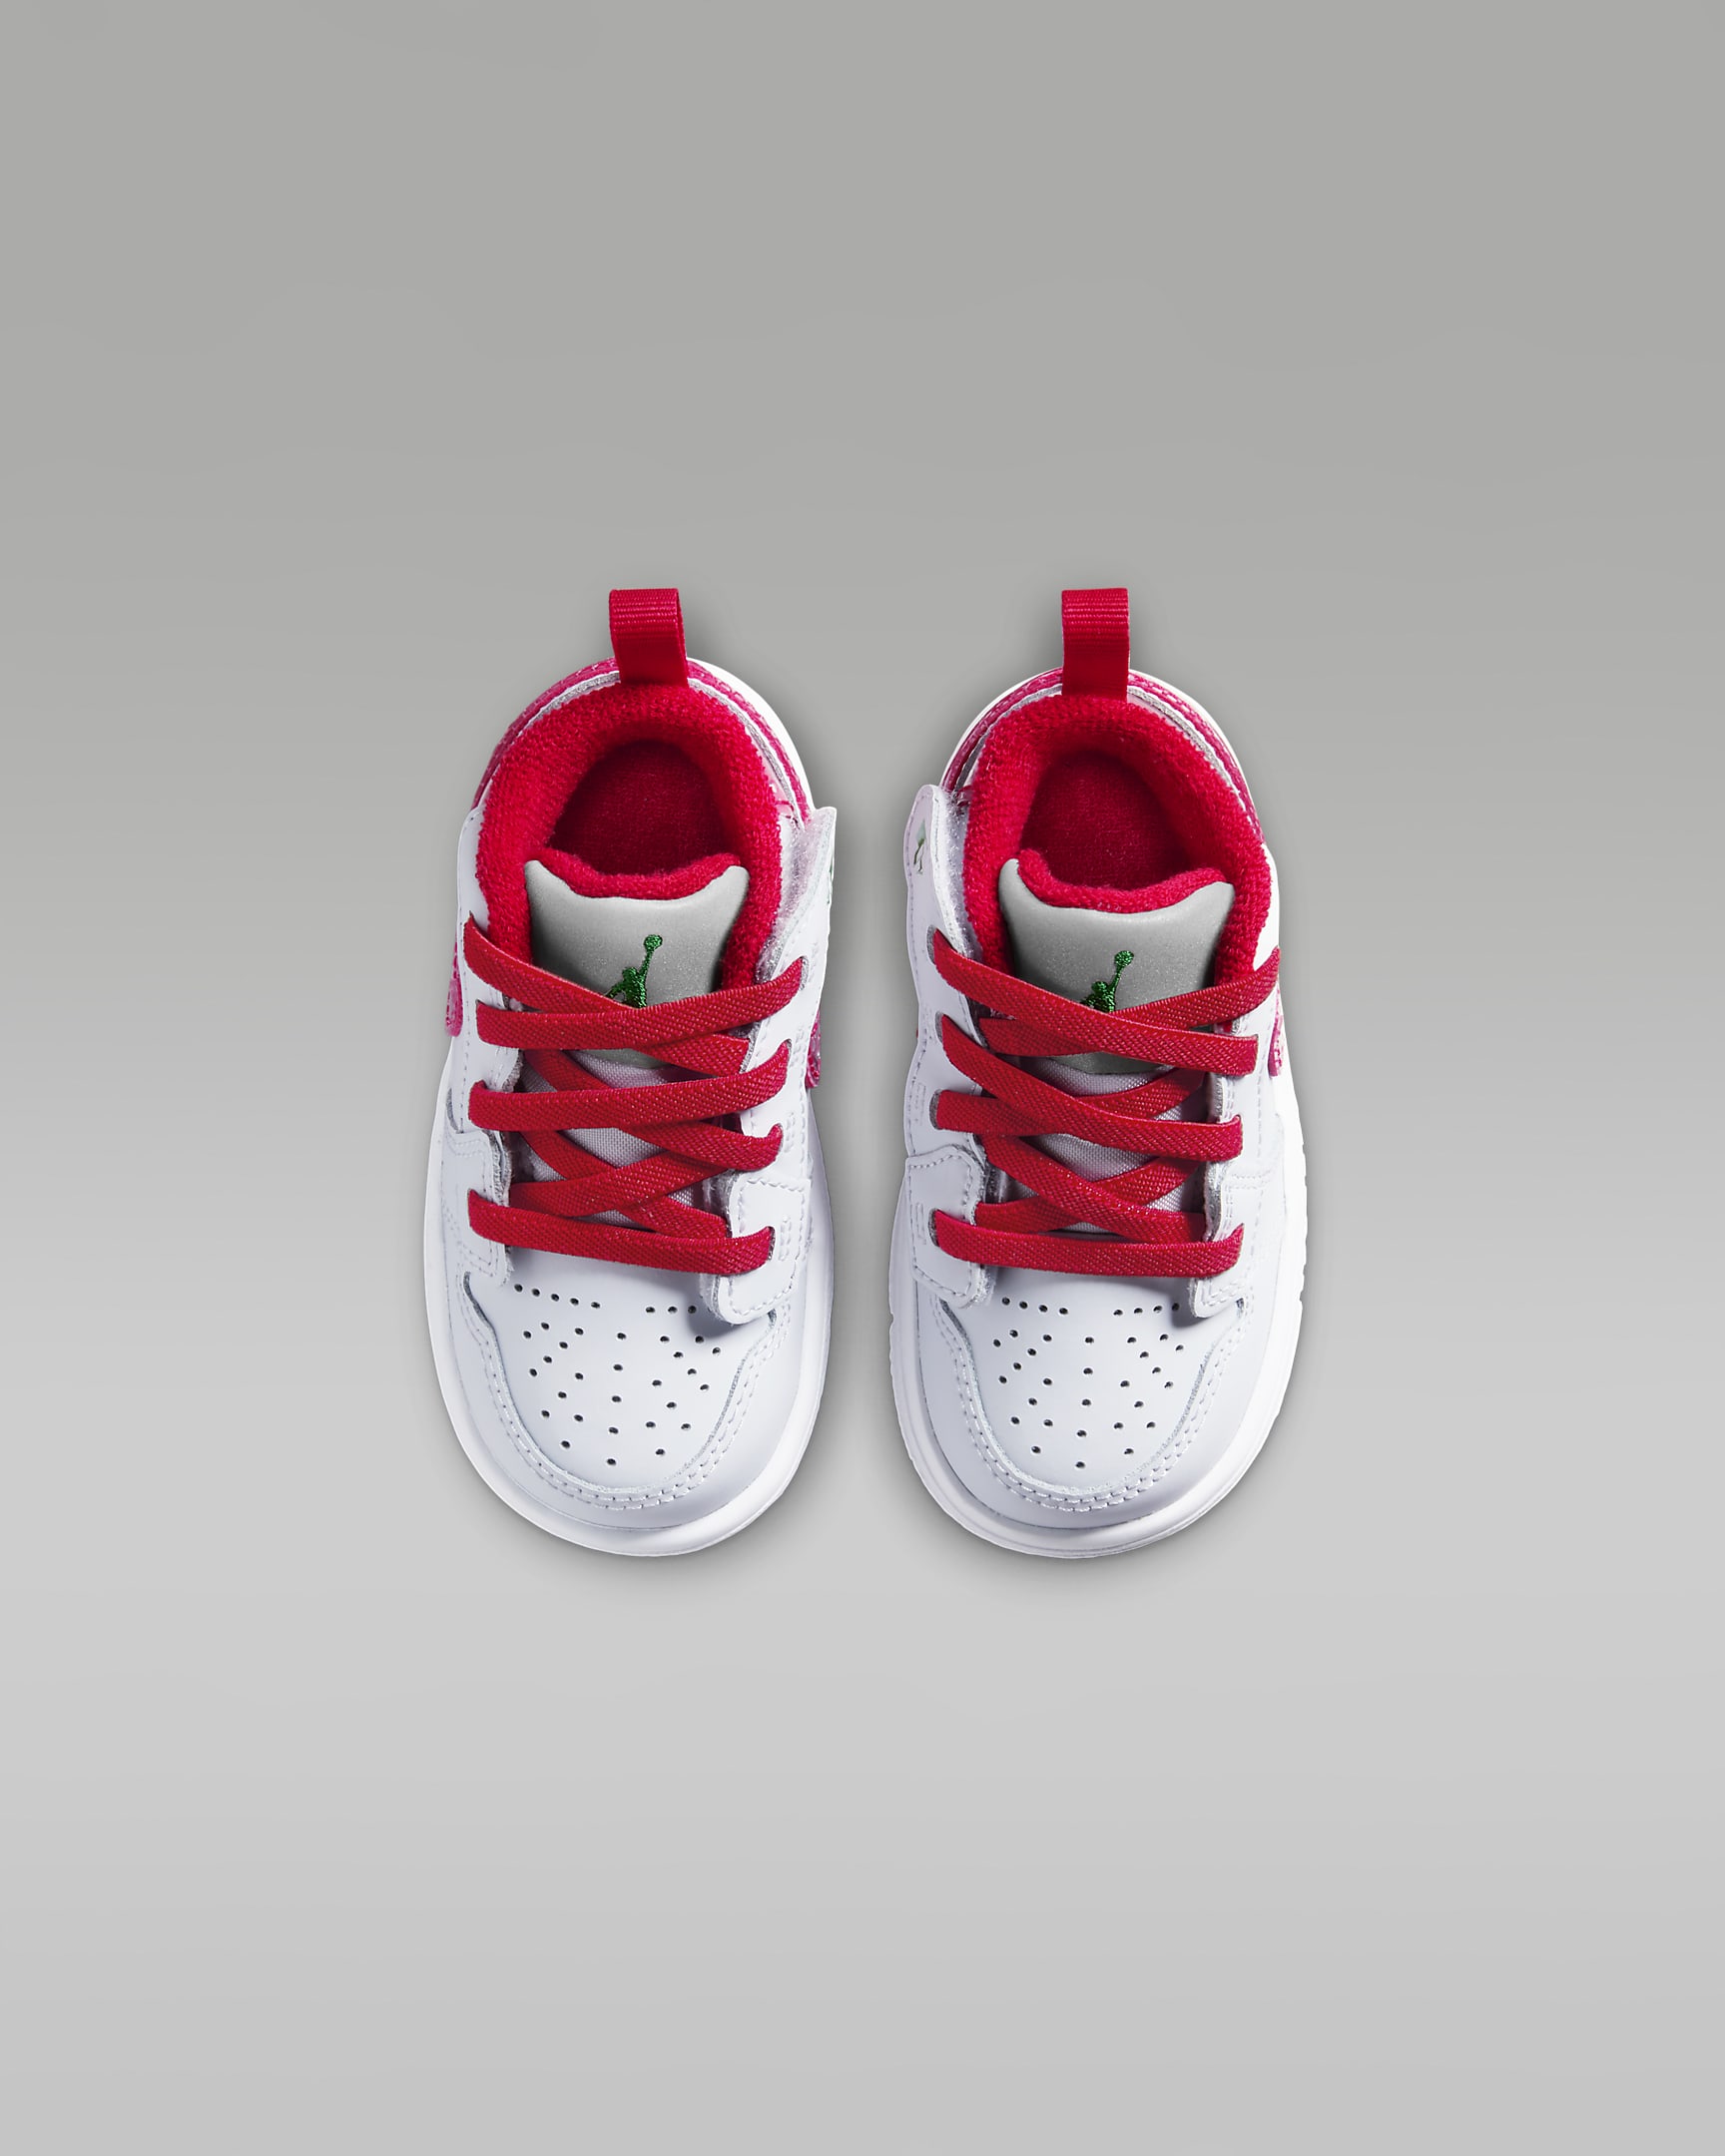 Jordan 1 Low Alt SE Baby/Toddler Shoes - Football Grey/Pine Green/White/University Red